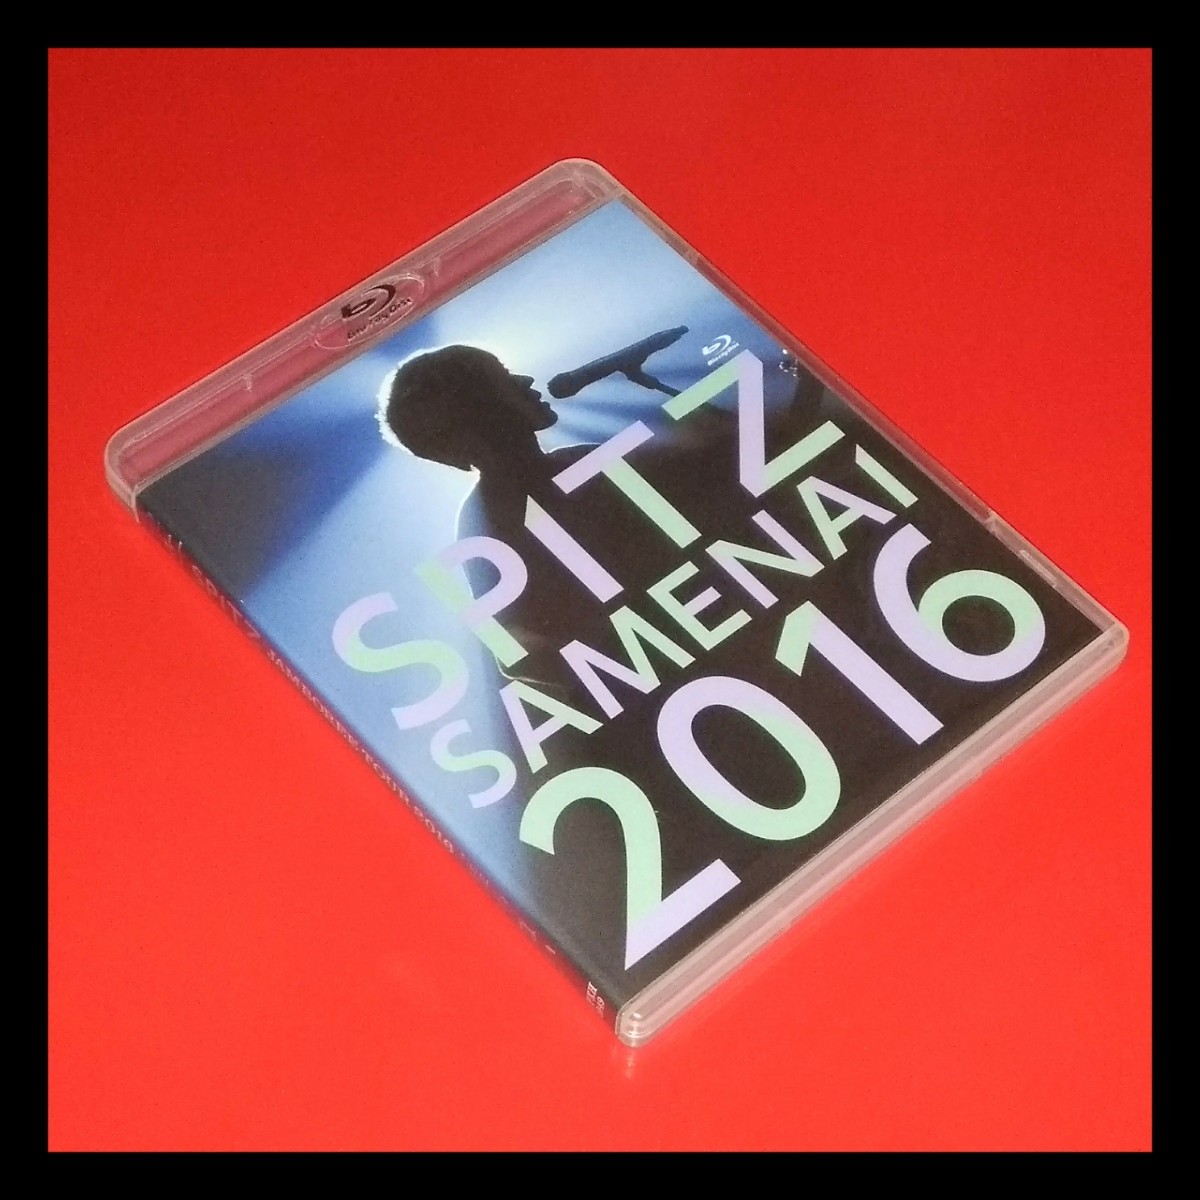 何でも揃う SPITZ JAMBOREE TOUR 2016“醒 め な い” Blu-ra - DVD 